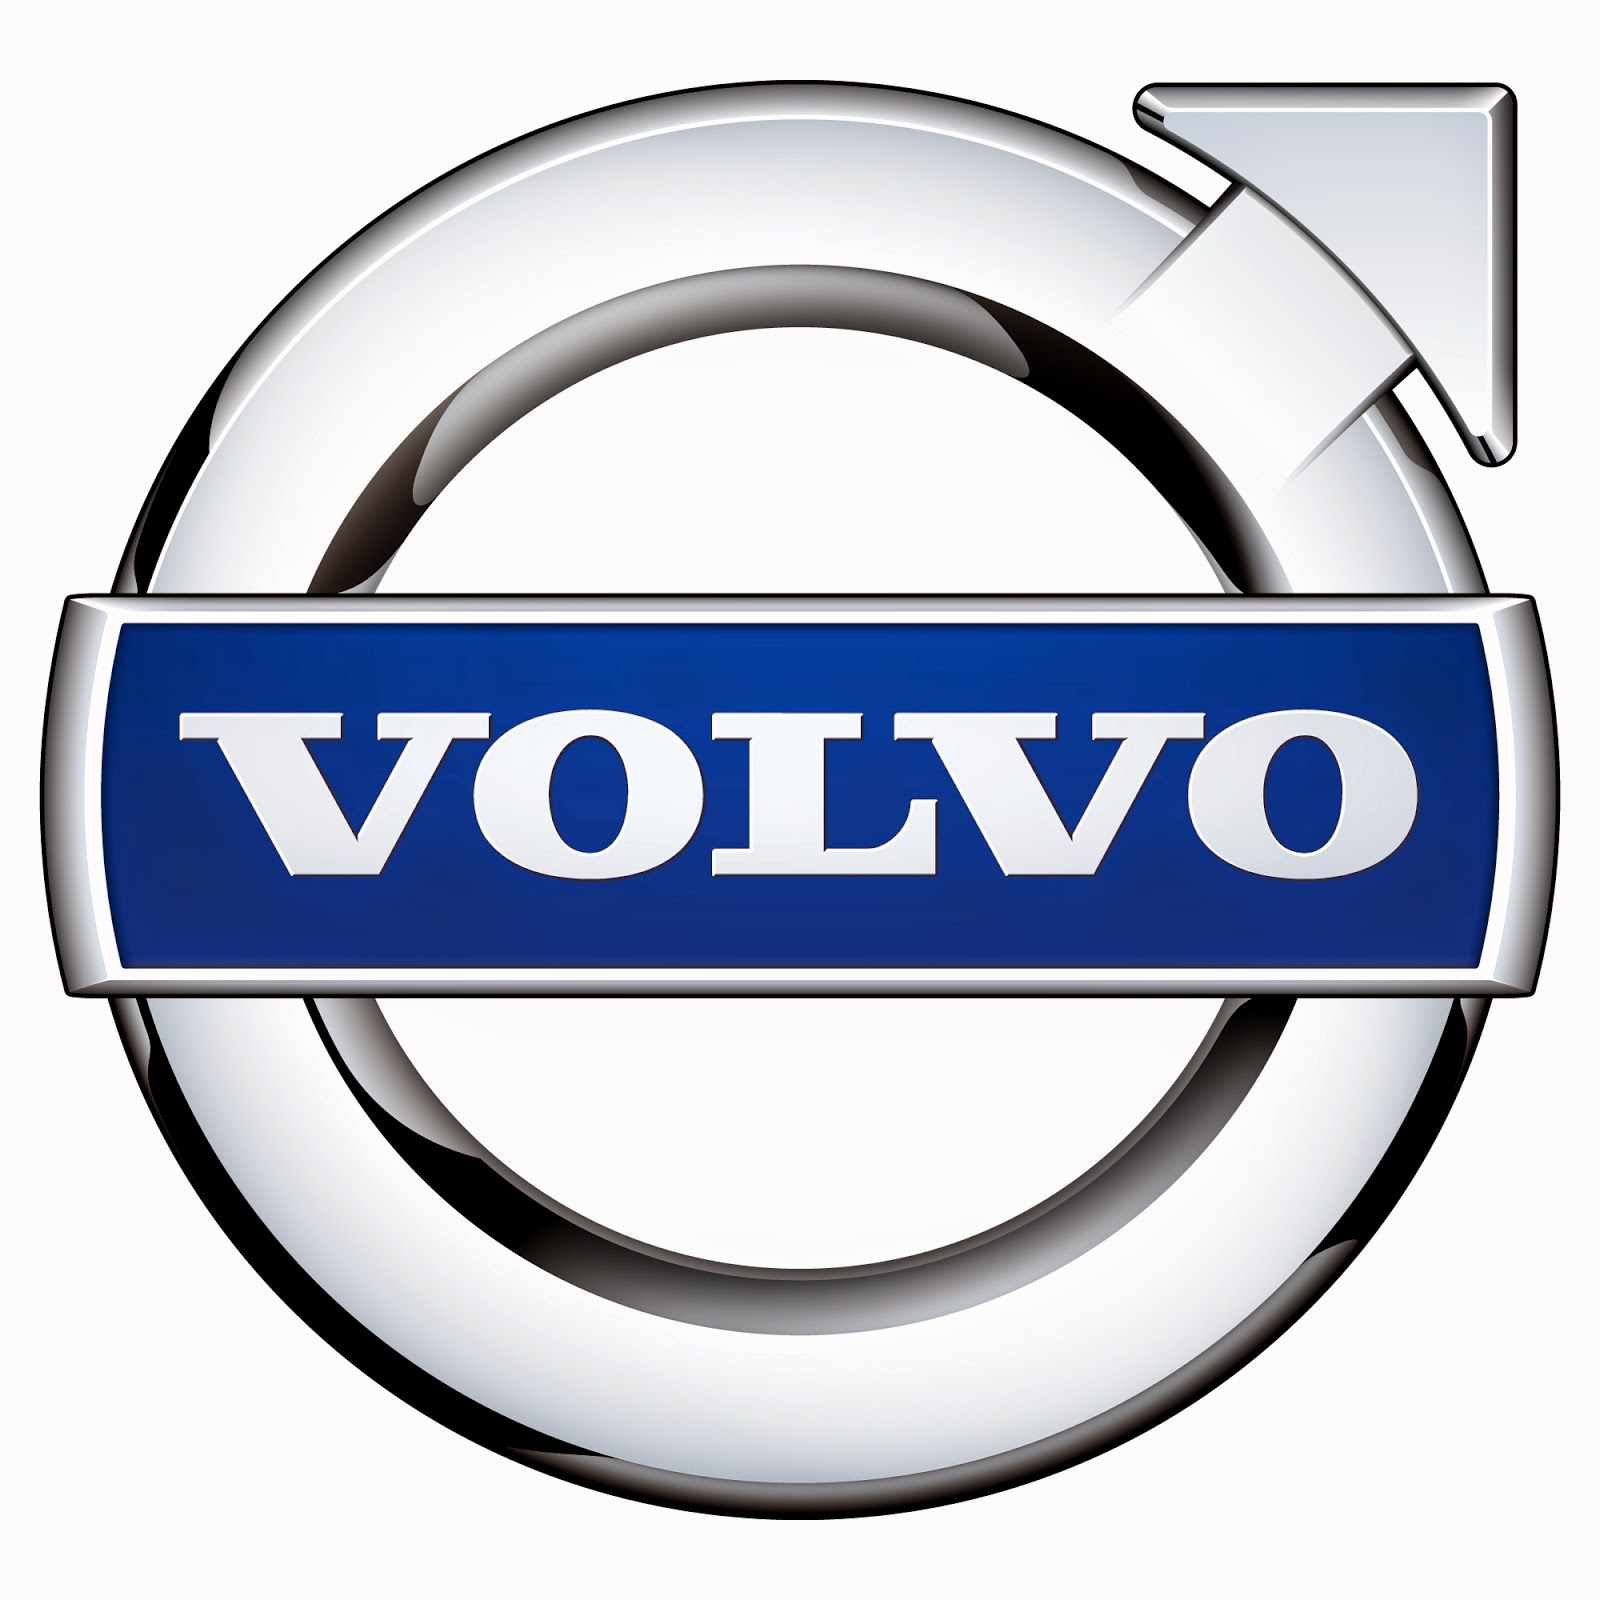 Daftar Harga Mobil Volvo Terbaru 2015 Kata Harga 2015